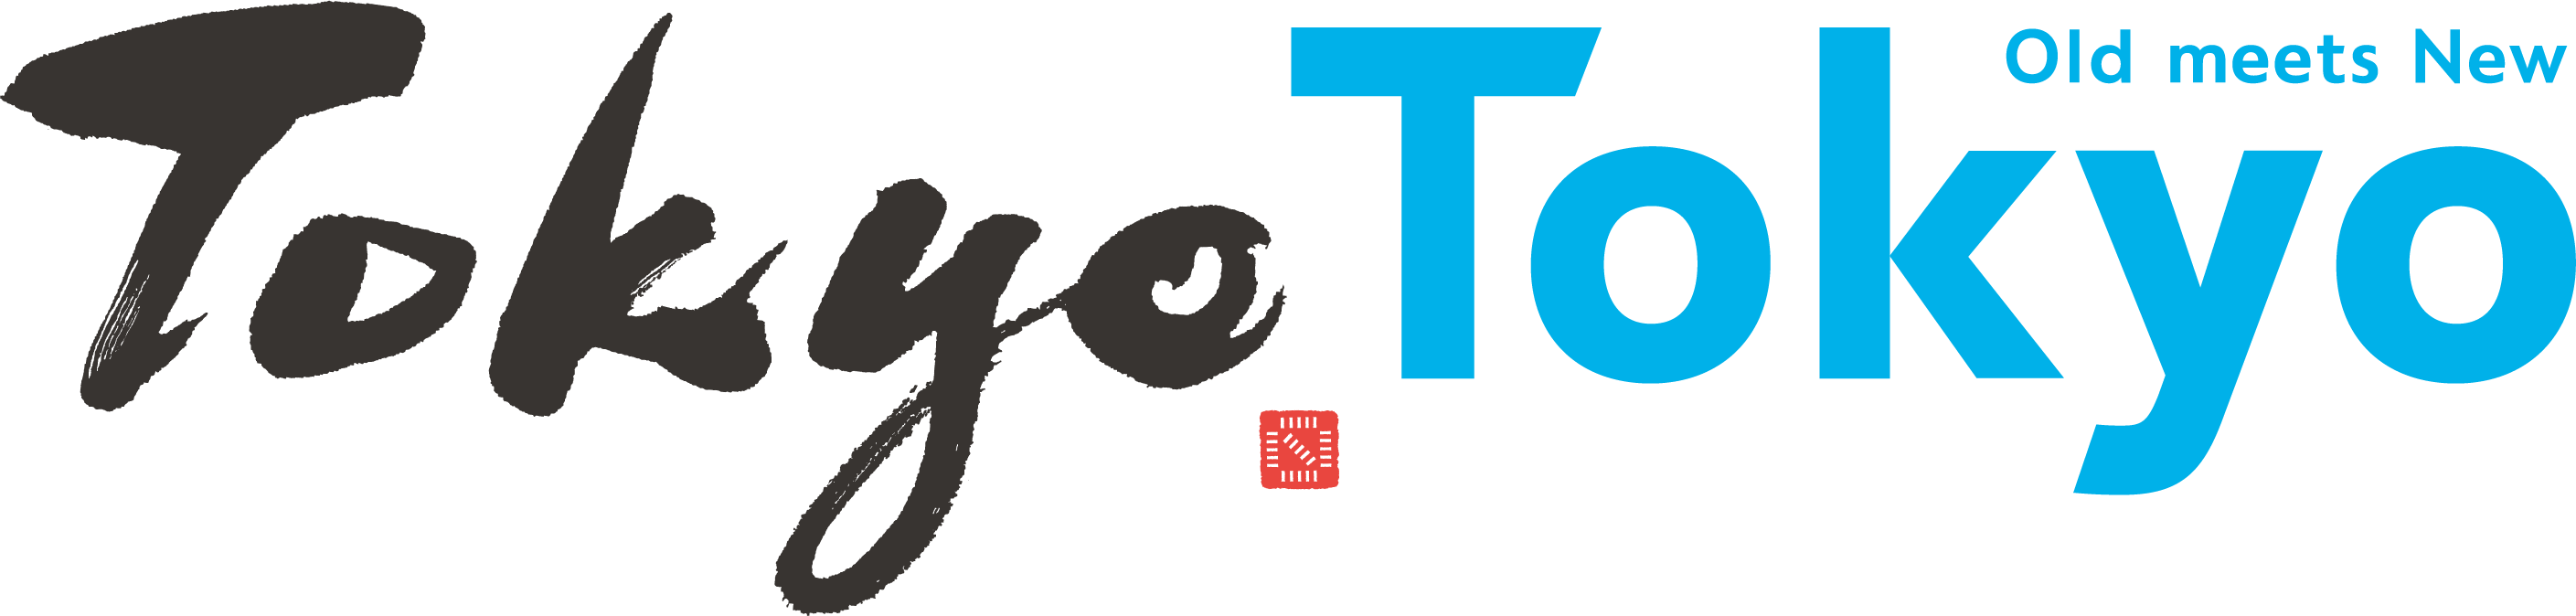 TokyoTokyo